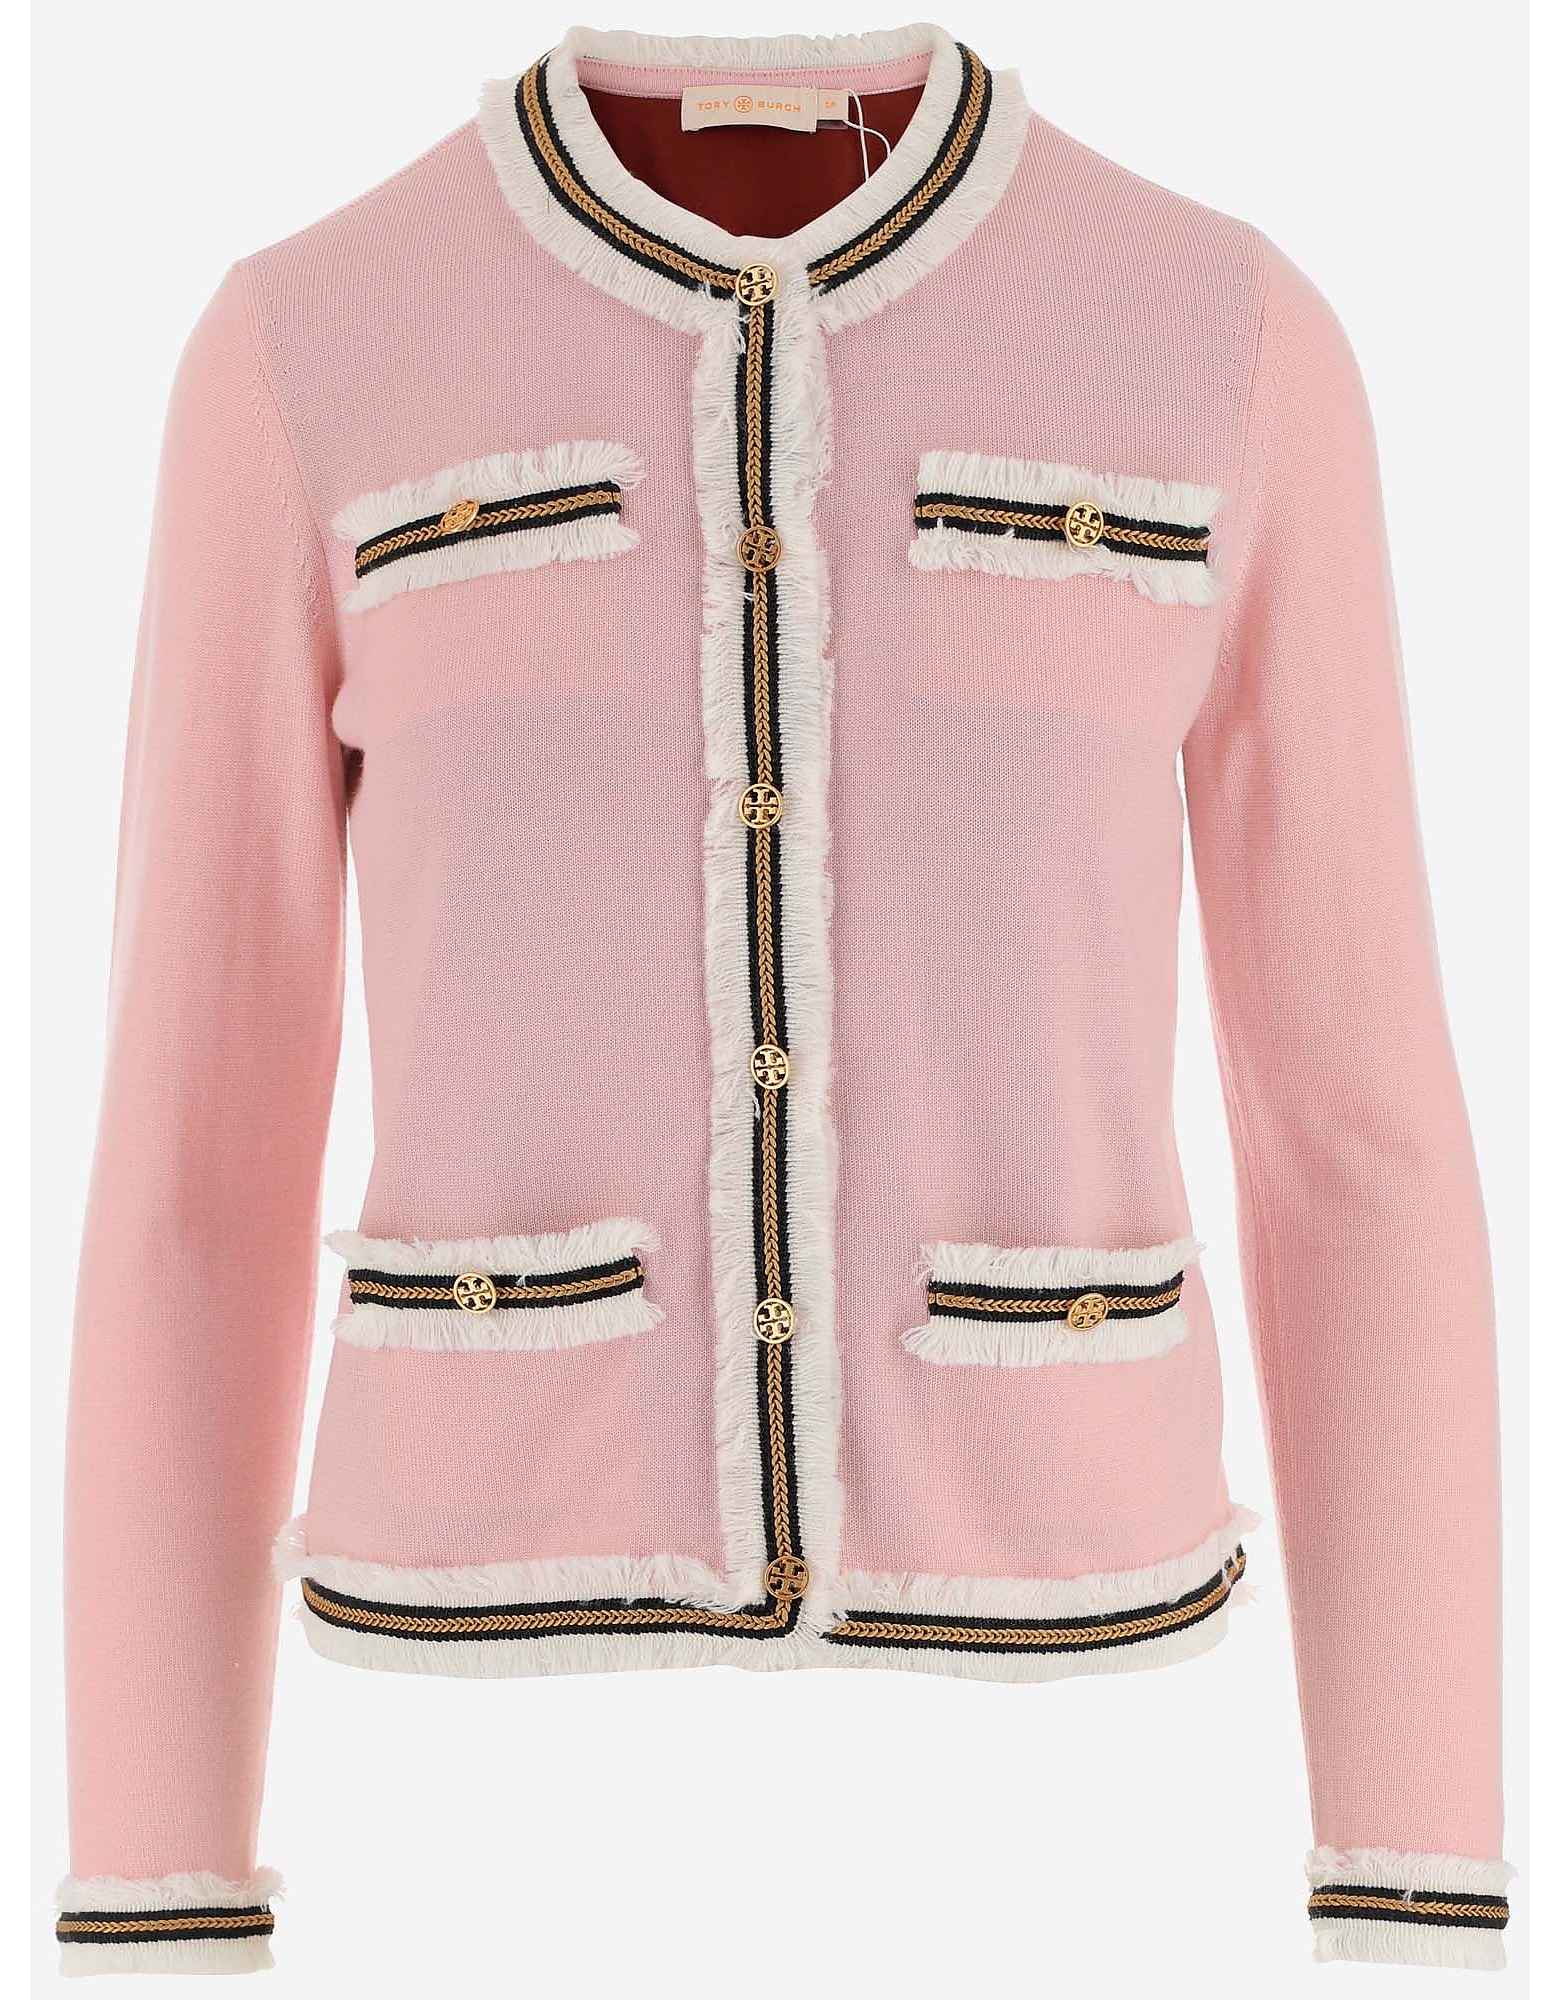 Tory Burch Designer Knitwear, Pink Merino Wool Women's Jacket-Sweater